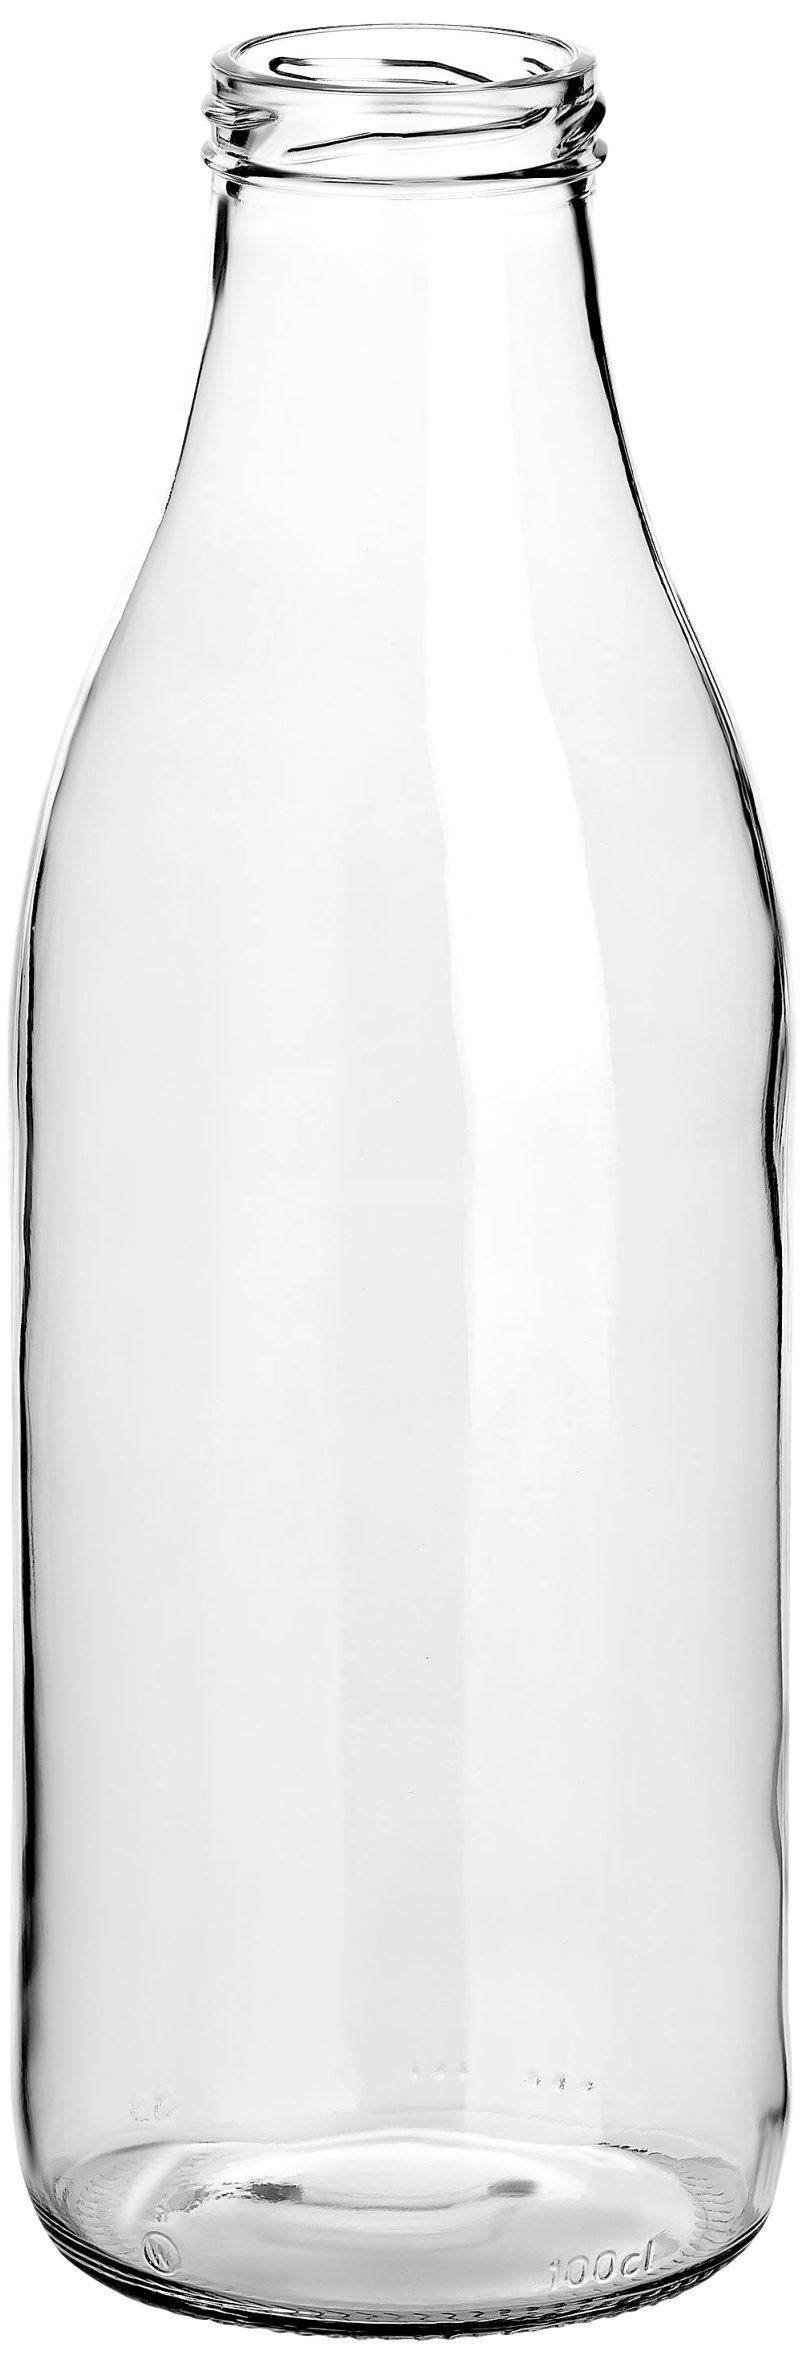 - l aus mit Set, gouveo 6er 1000 ml Große Glas, Saftflaschen Schraub-Deckel 1,0 silberfarben Trinkflasche Flasche